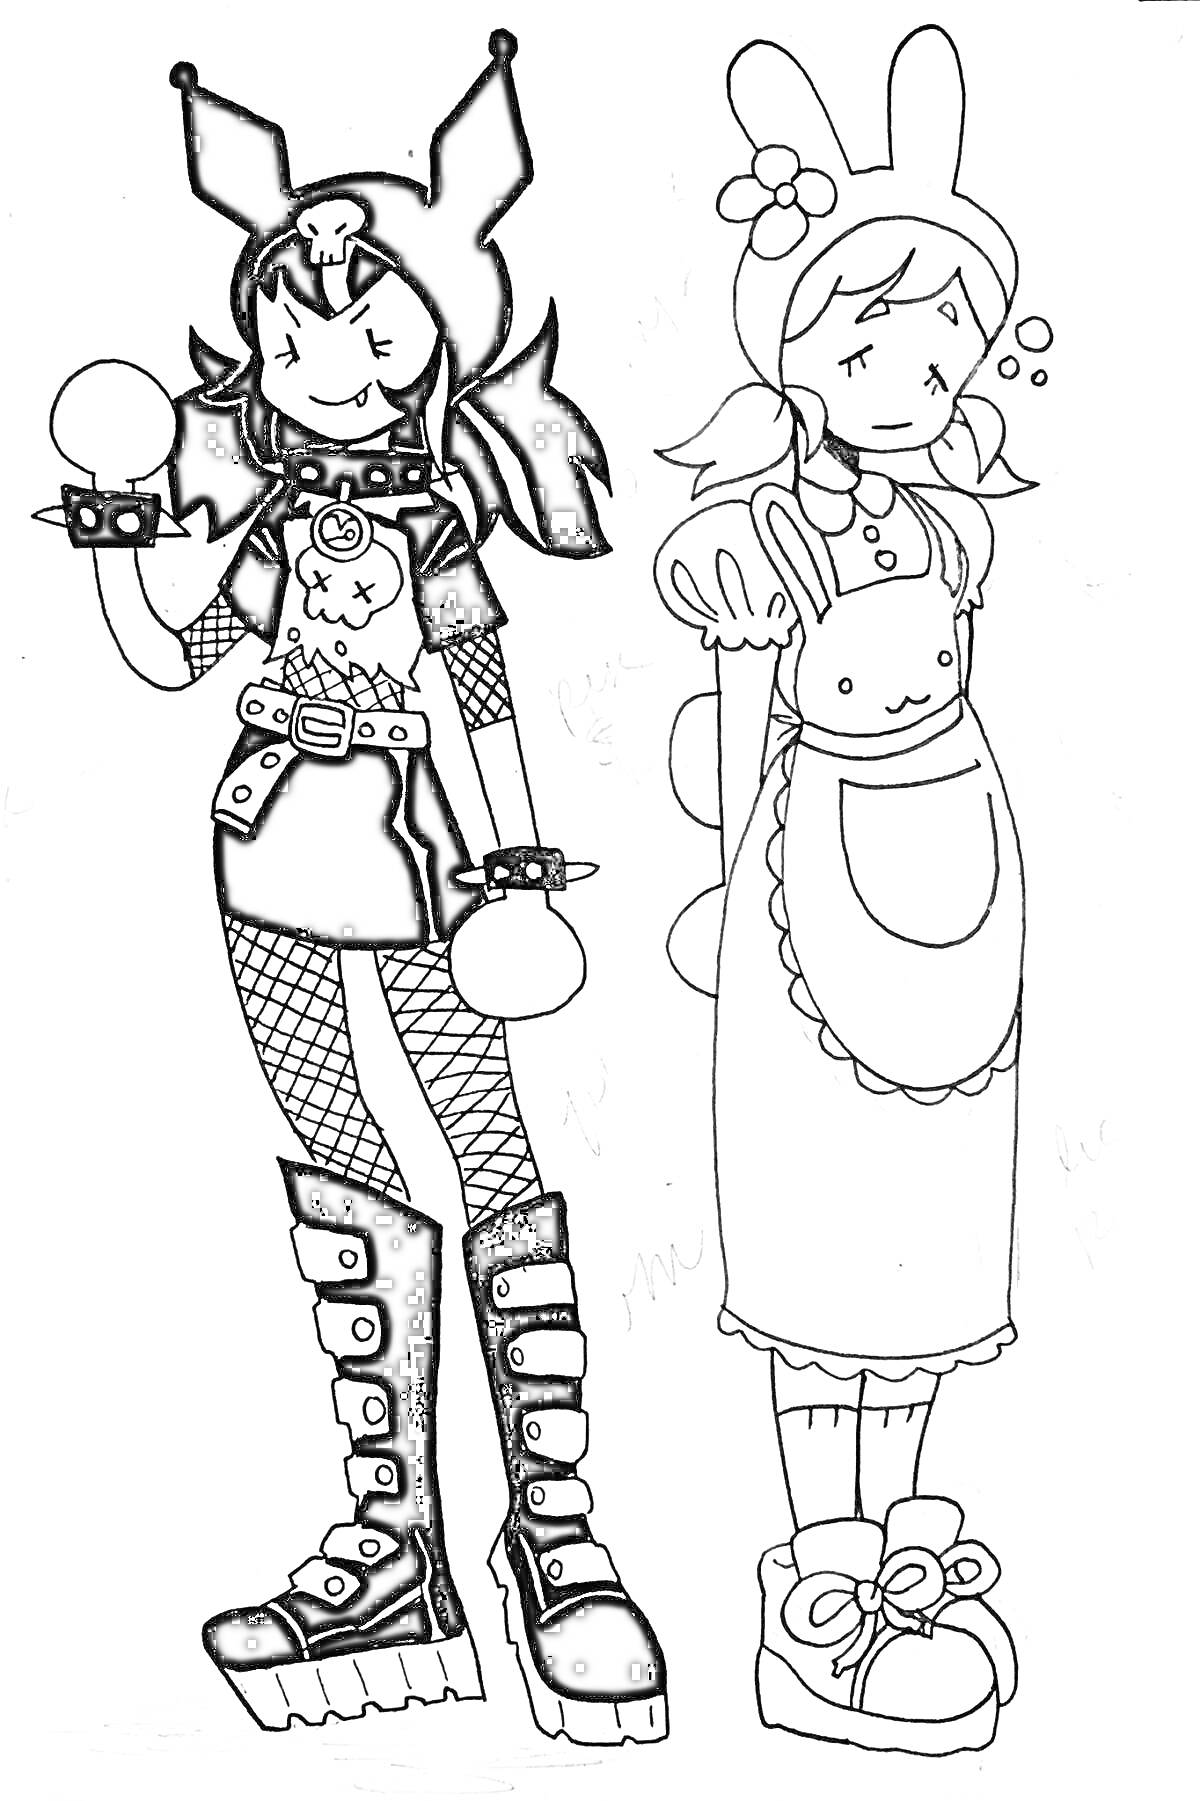  Девушки в костюмах: одна в готическом наряде с черепом и ушастой шапочкой, другая в фартуке и бантиками